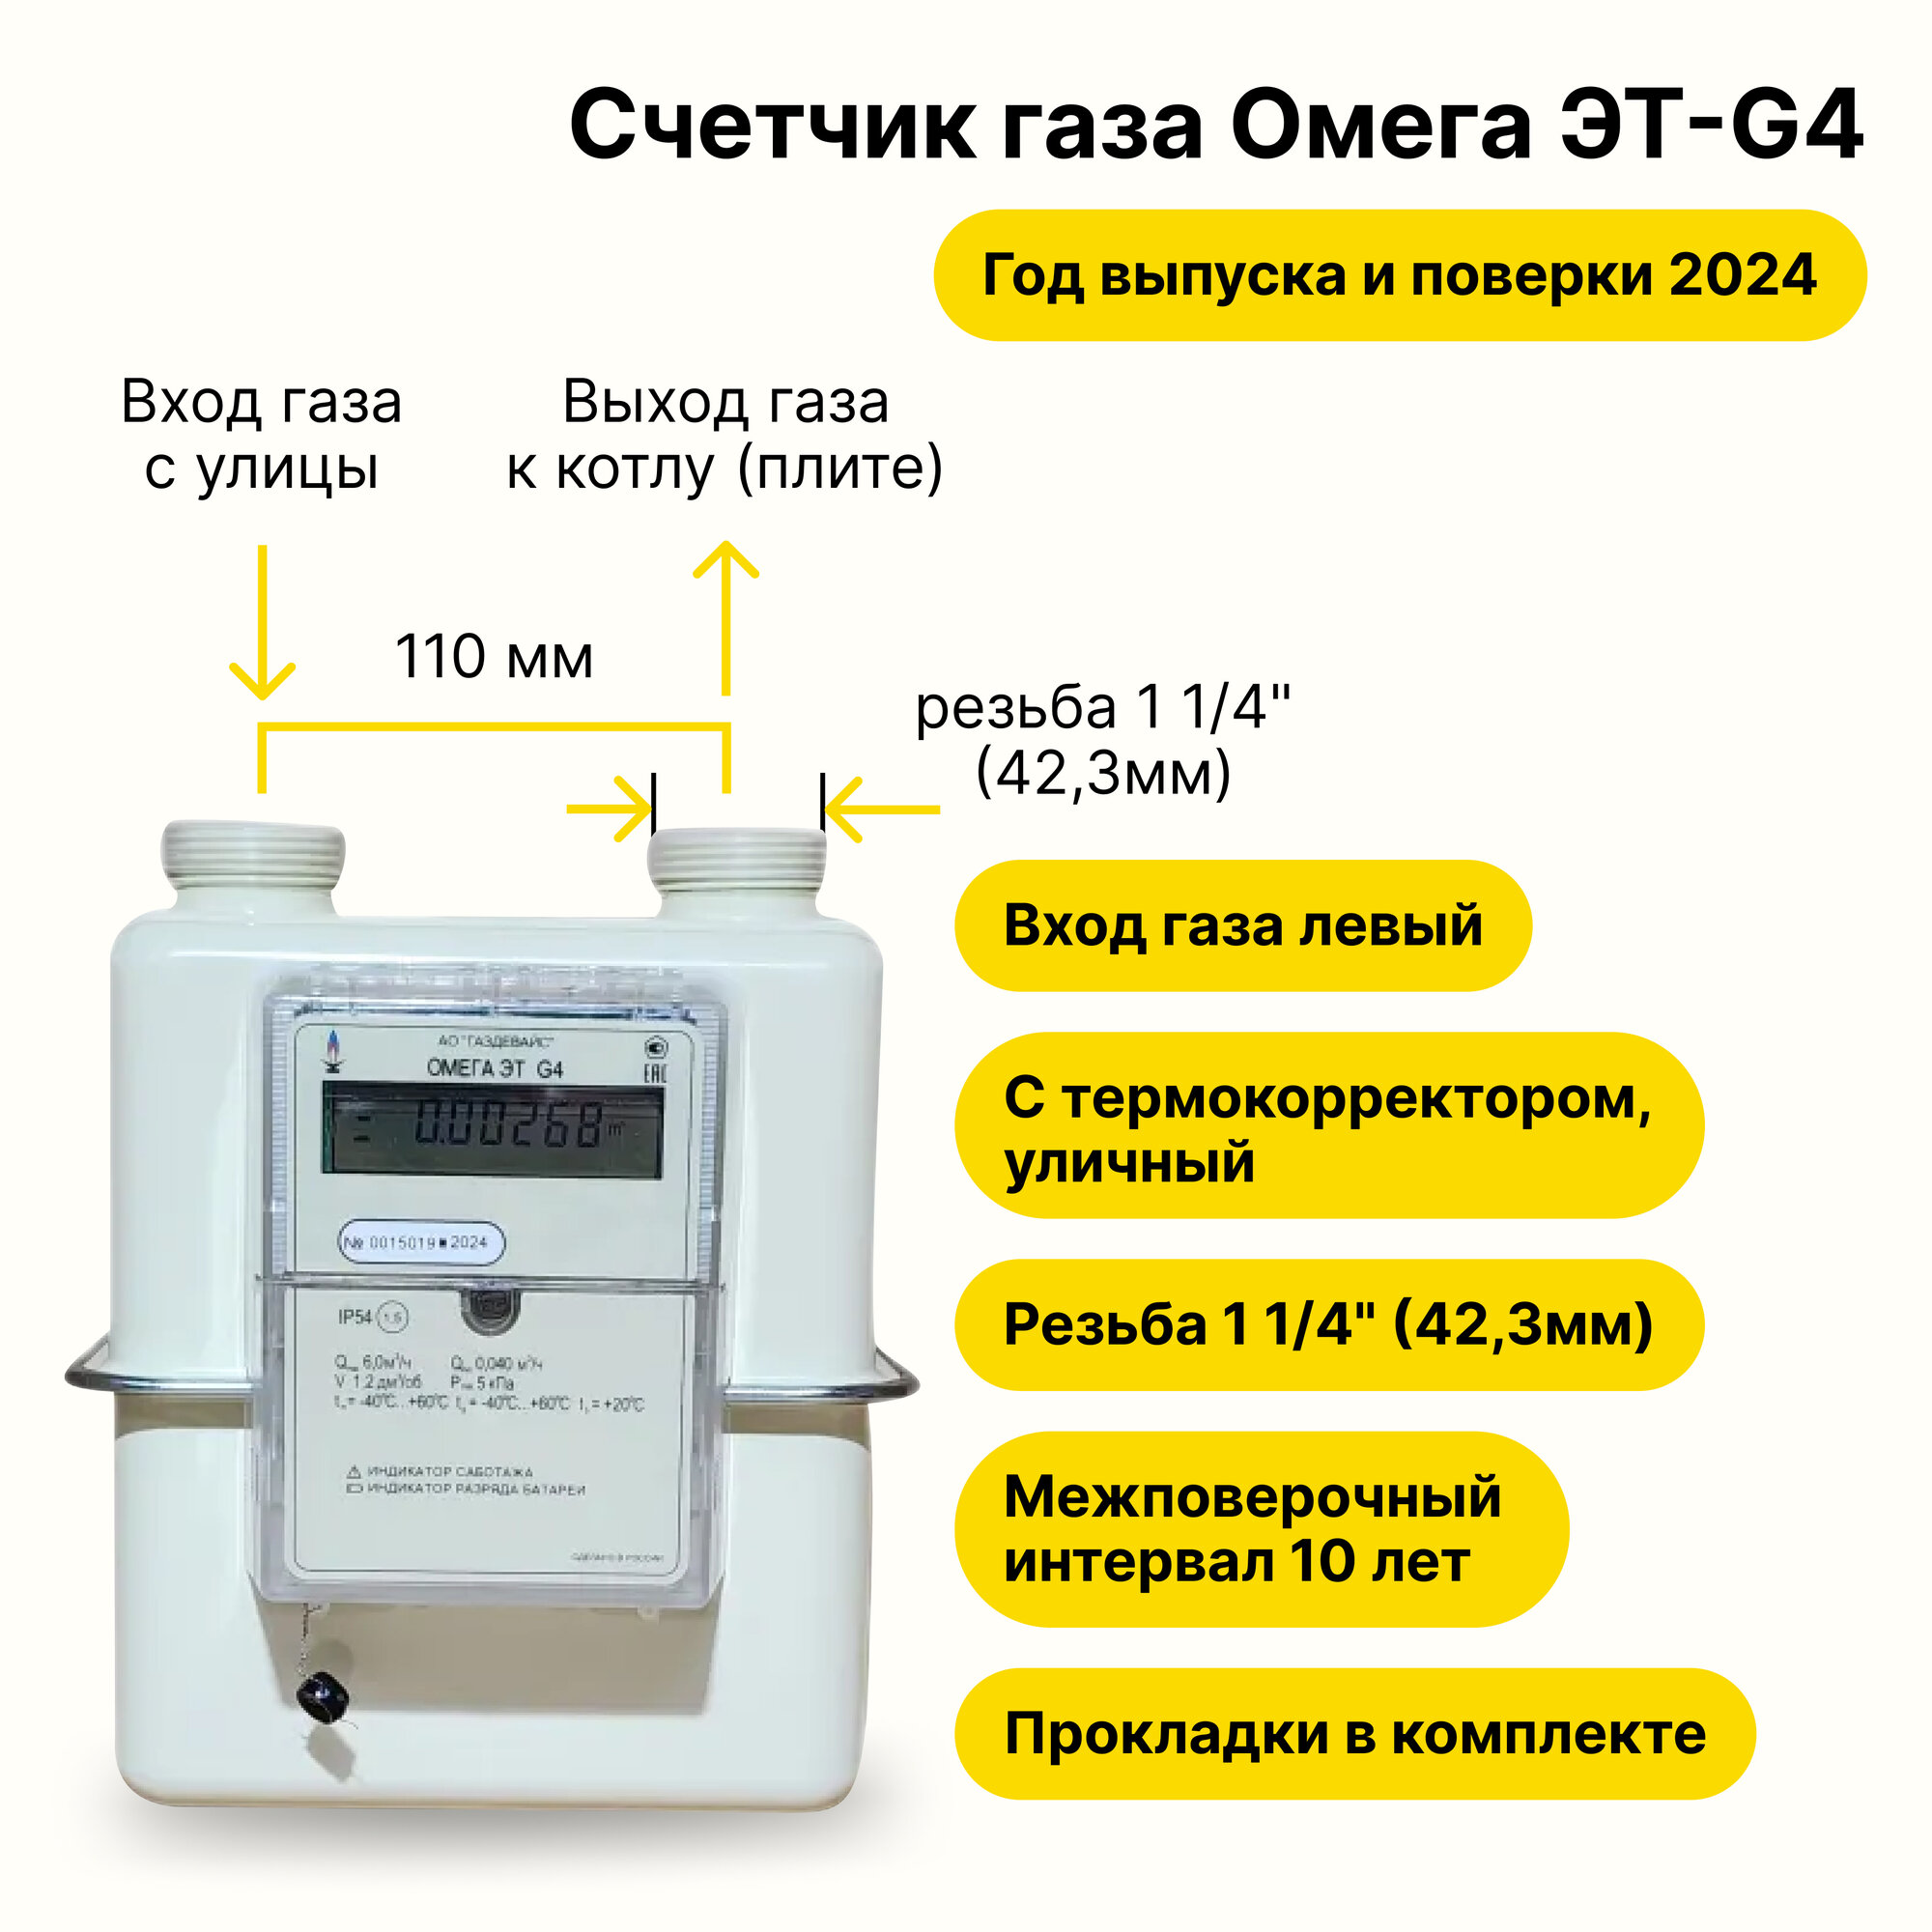 Омега ЭТ G4 уличный с электронным термокорректором Газдевайс (вход газа левый, резьба 1 1/4", прокладки В комплекте) 2024 года выпуска и поверки